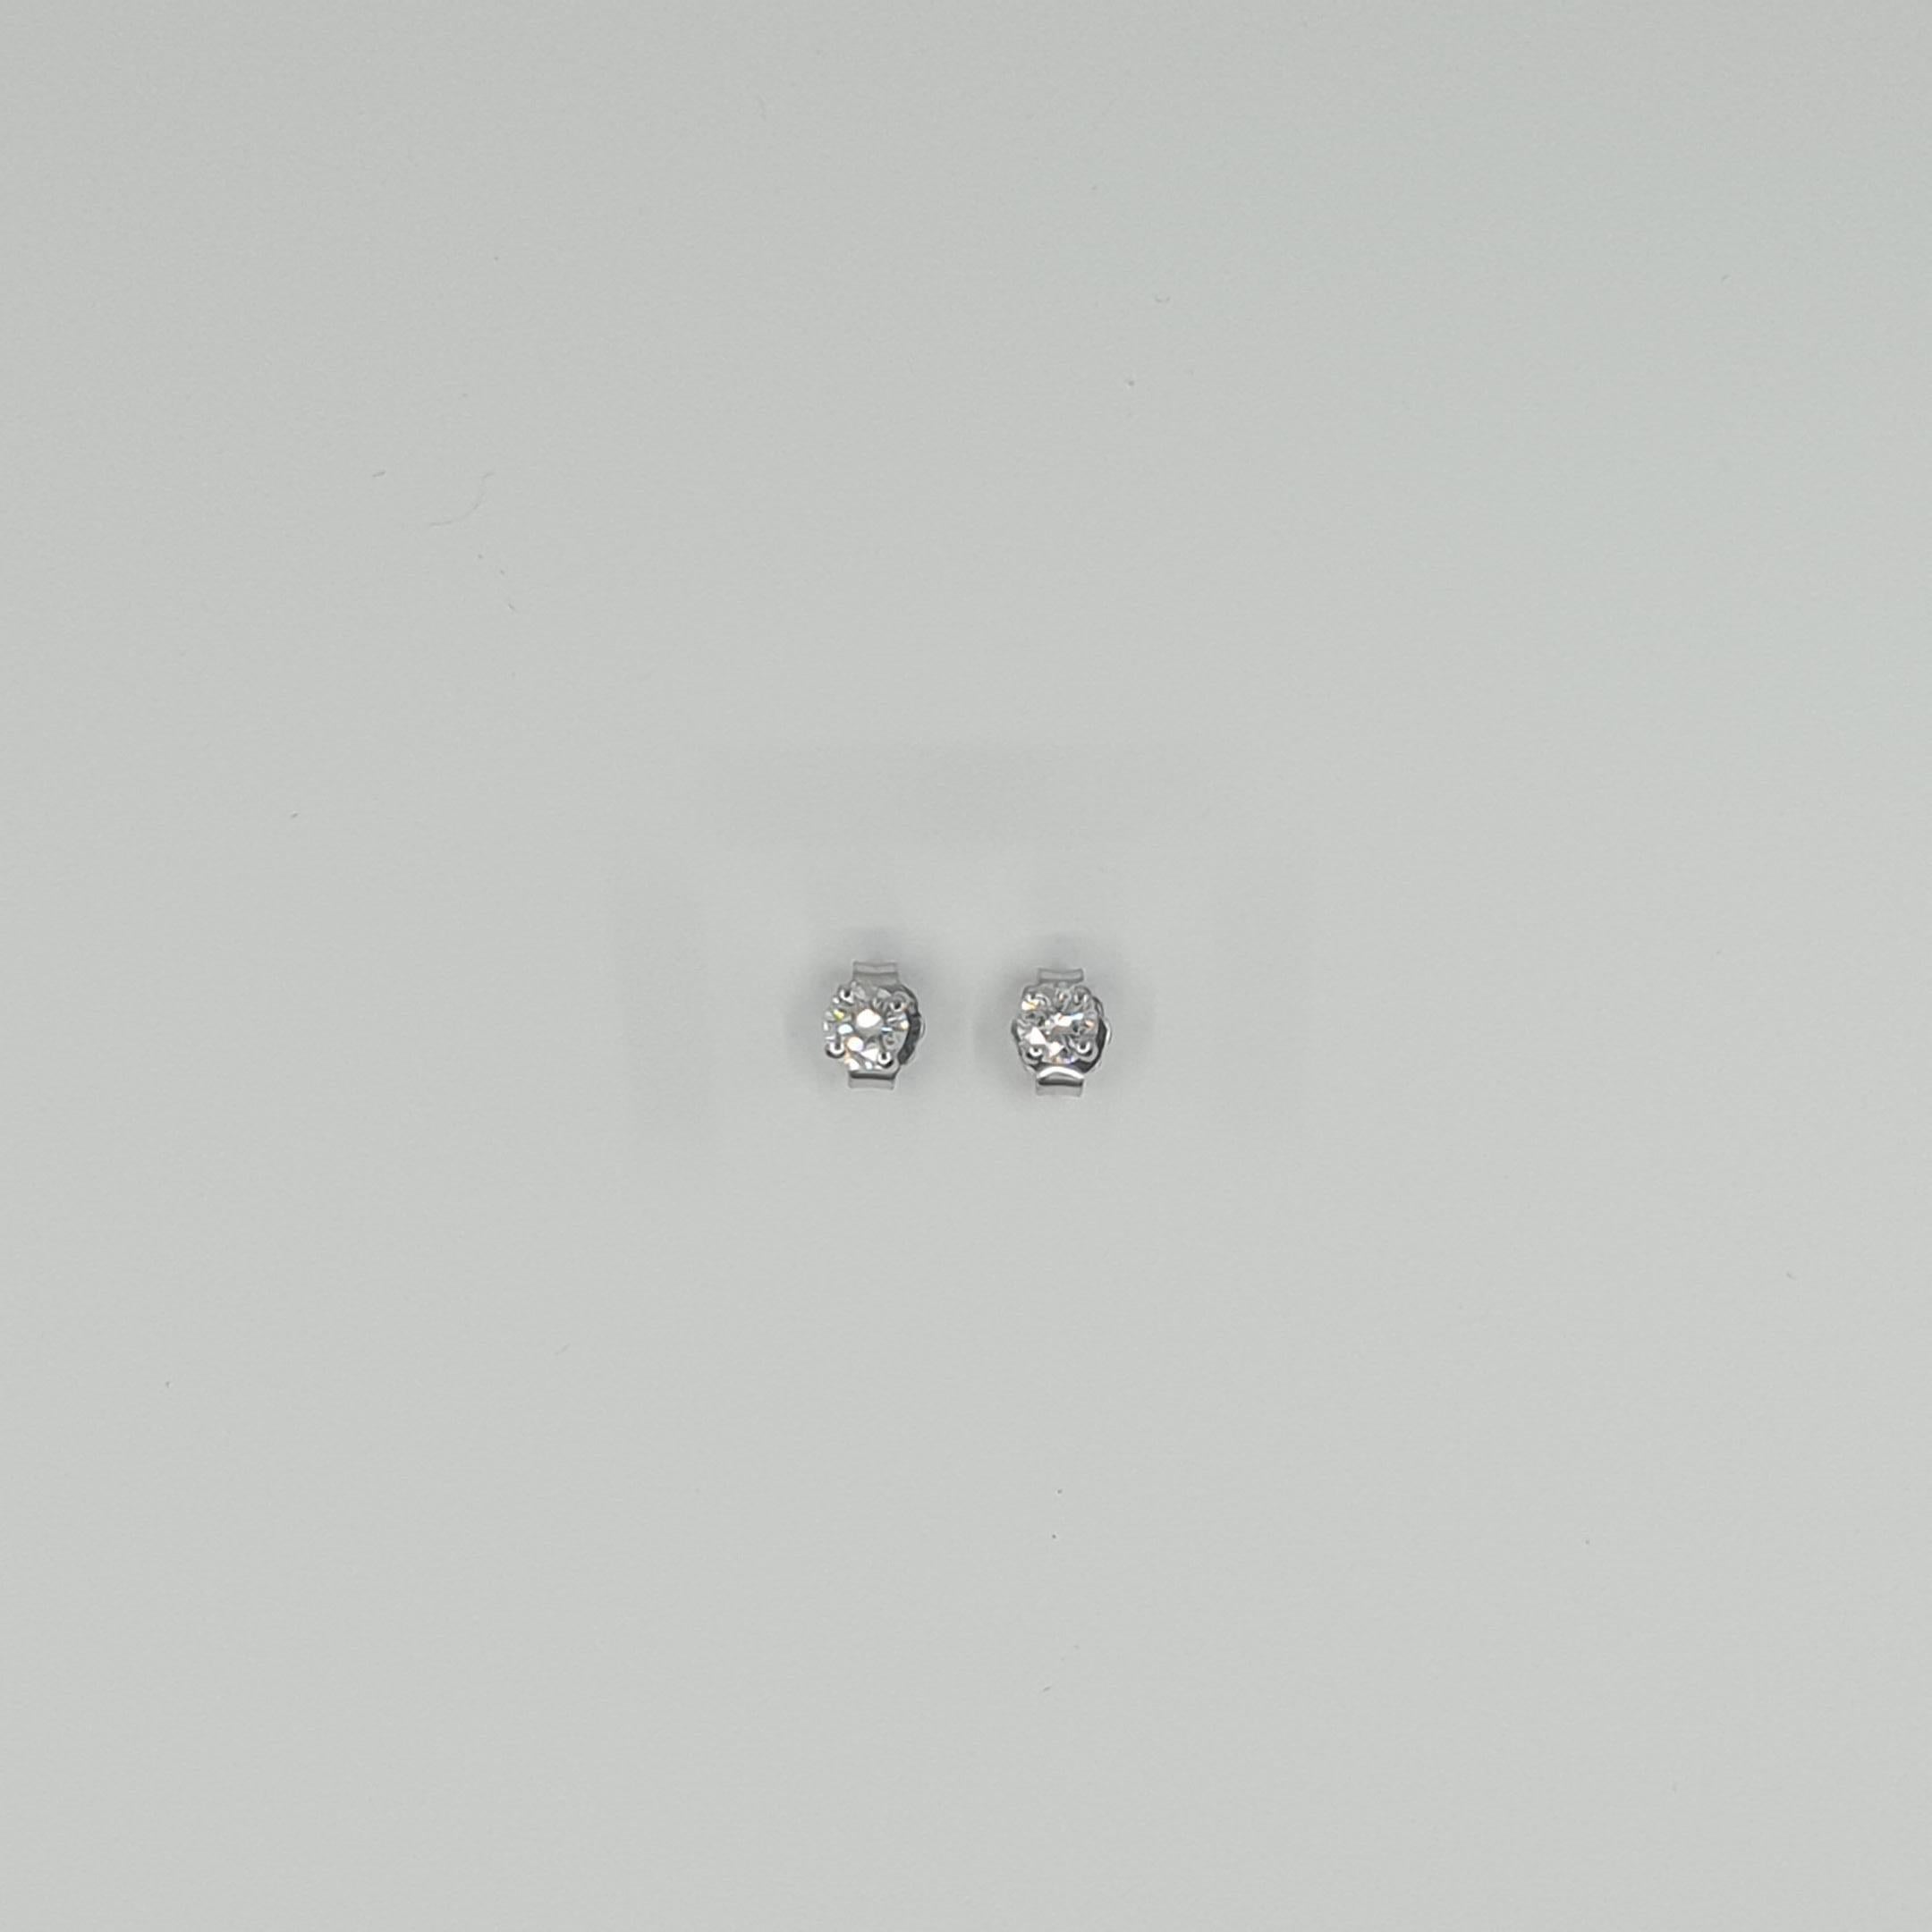 Boucles d'oreilles et collier en diamant solitaire certifié GIA. 
Trois diamants G/SI1/SI2 avec un total de 0,63 carat (1x 0,22ct, 1x 0,21ct, 1x 0,20ct). 

Collier solitaire en or blanc 750 avec boucles d'oreilles.  
Chaîne d'ancre de 42 cm de long